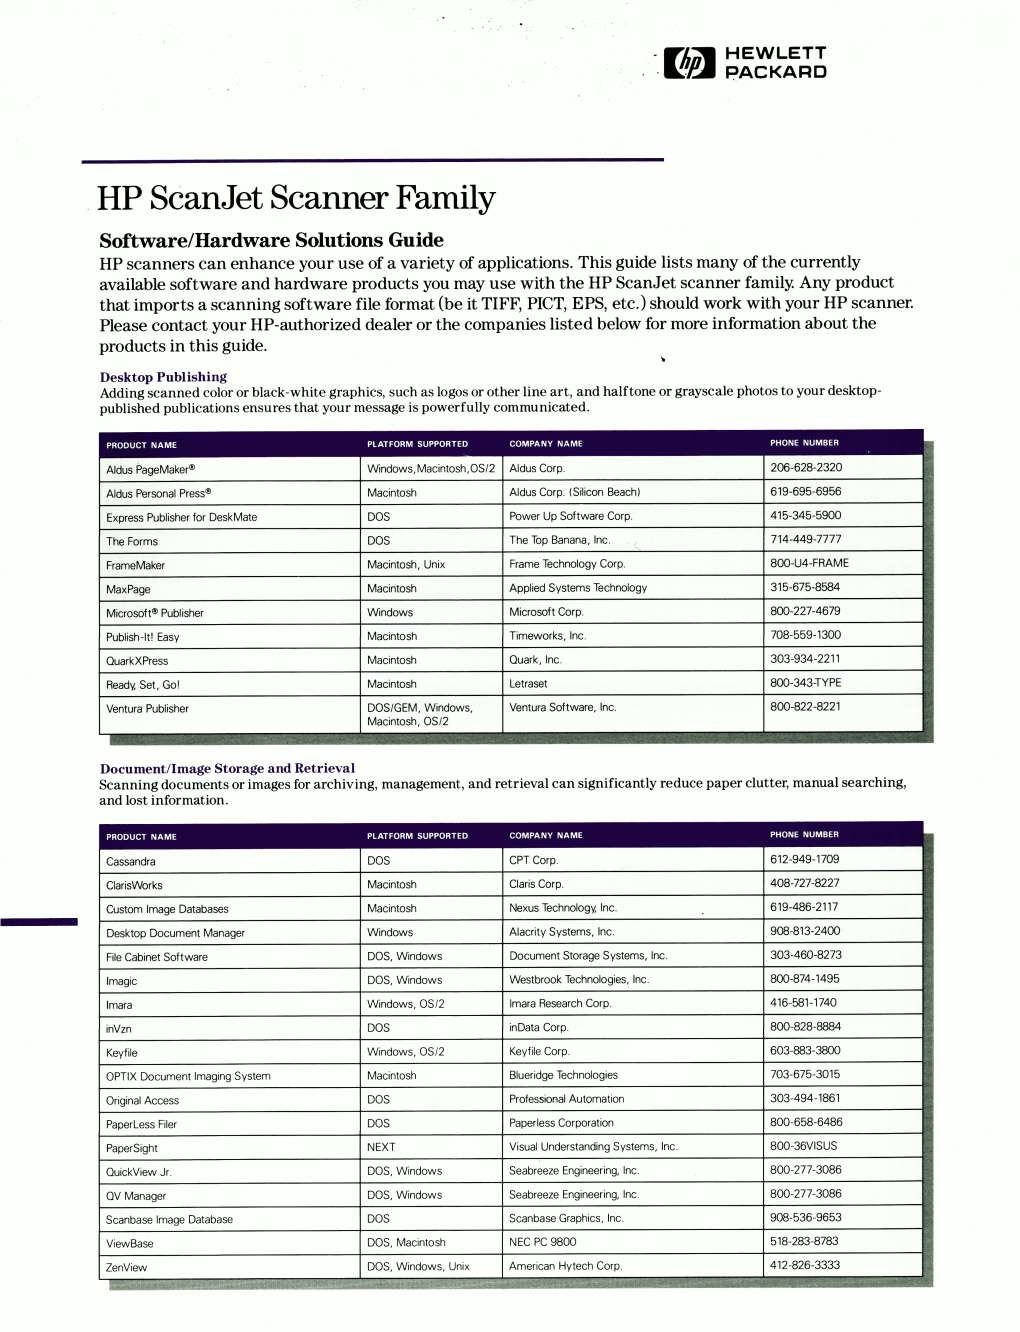 HP Scanjet Scanner Family Brochure 5091-1420E 2/92